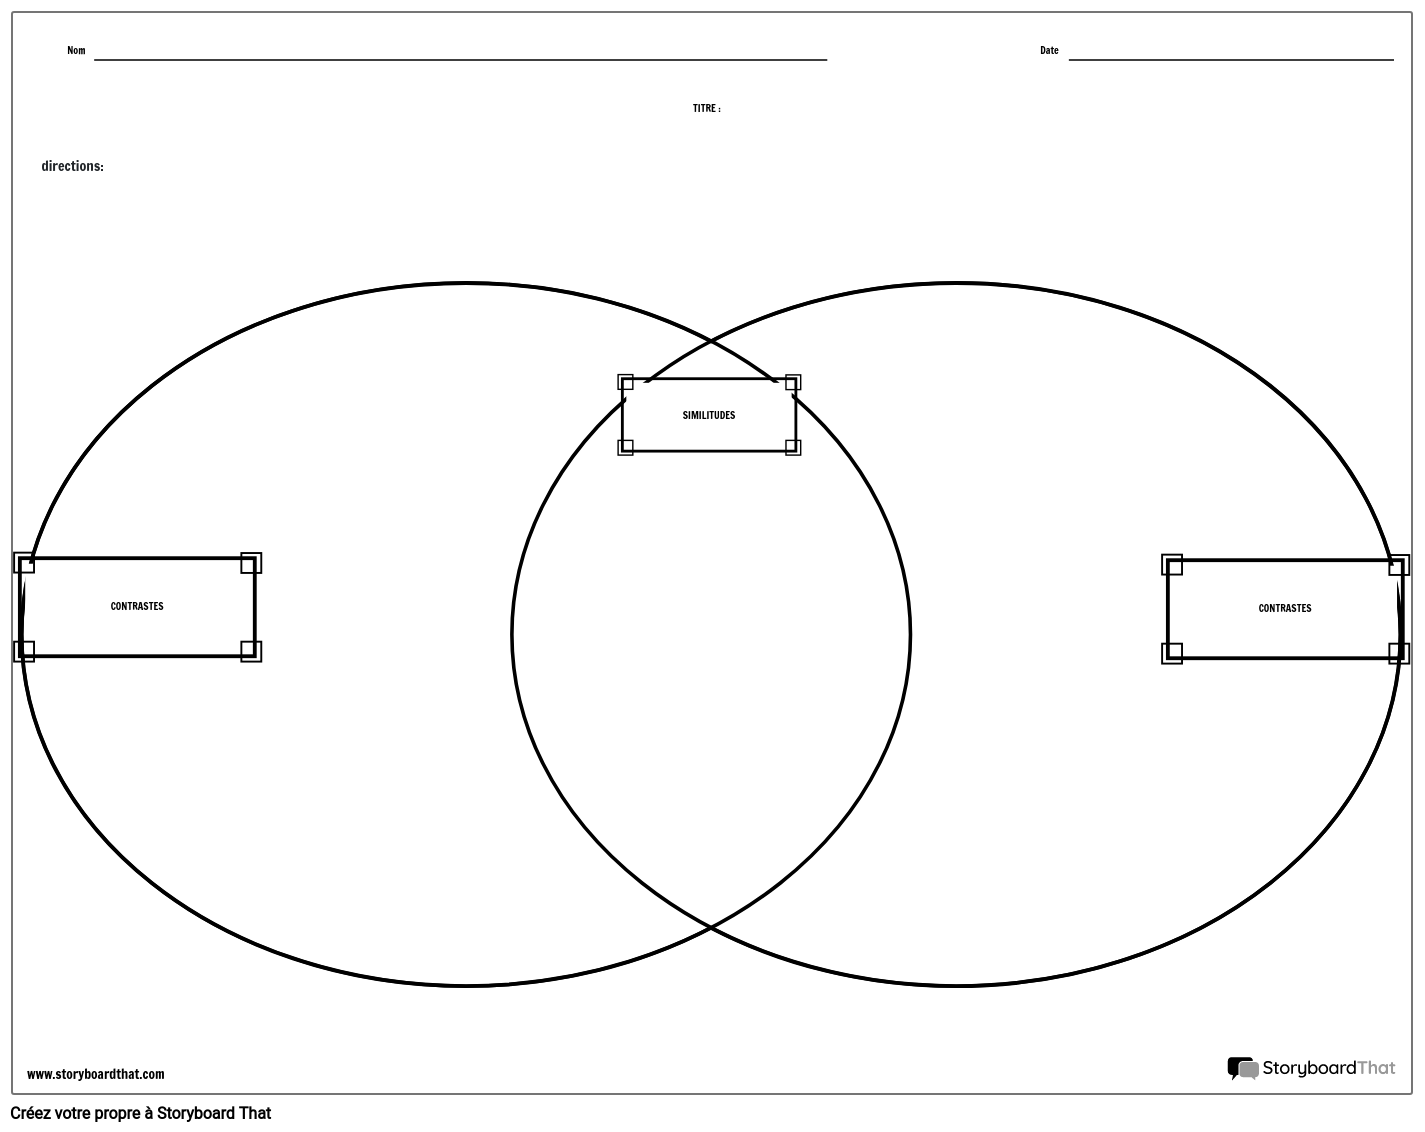 Comparer le Diagramme de Venn de Contraste